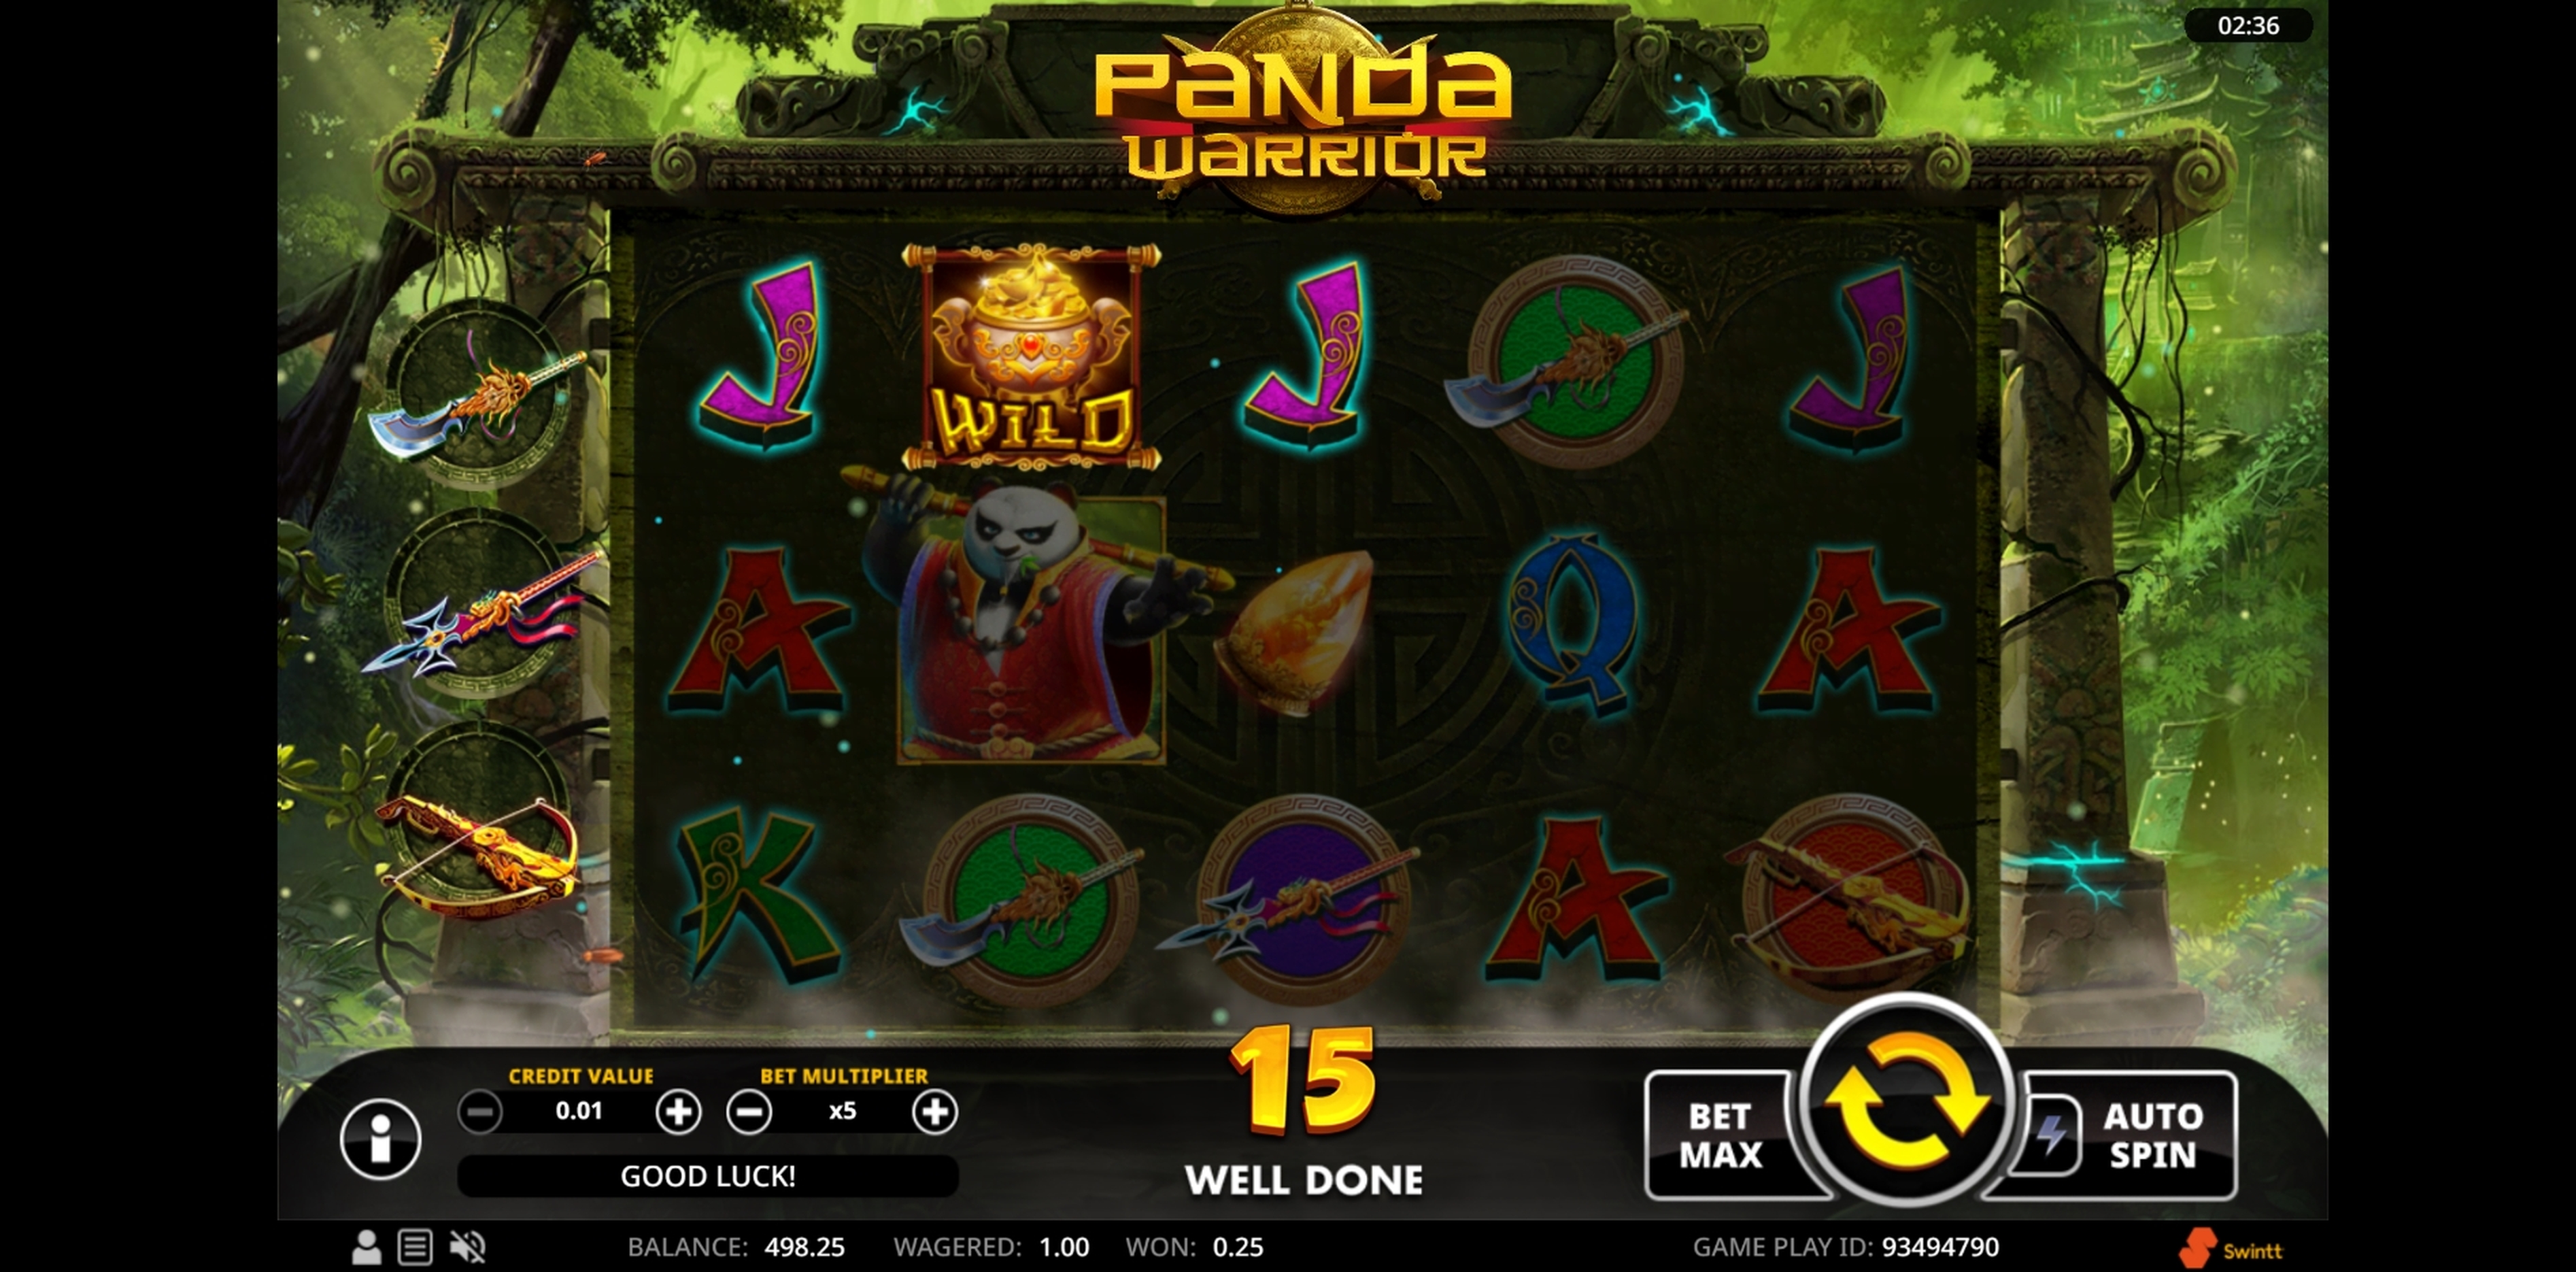 Win Money in Panda Warrior Free Slot Game by Swintt